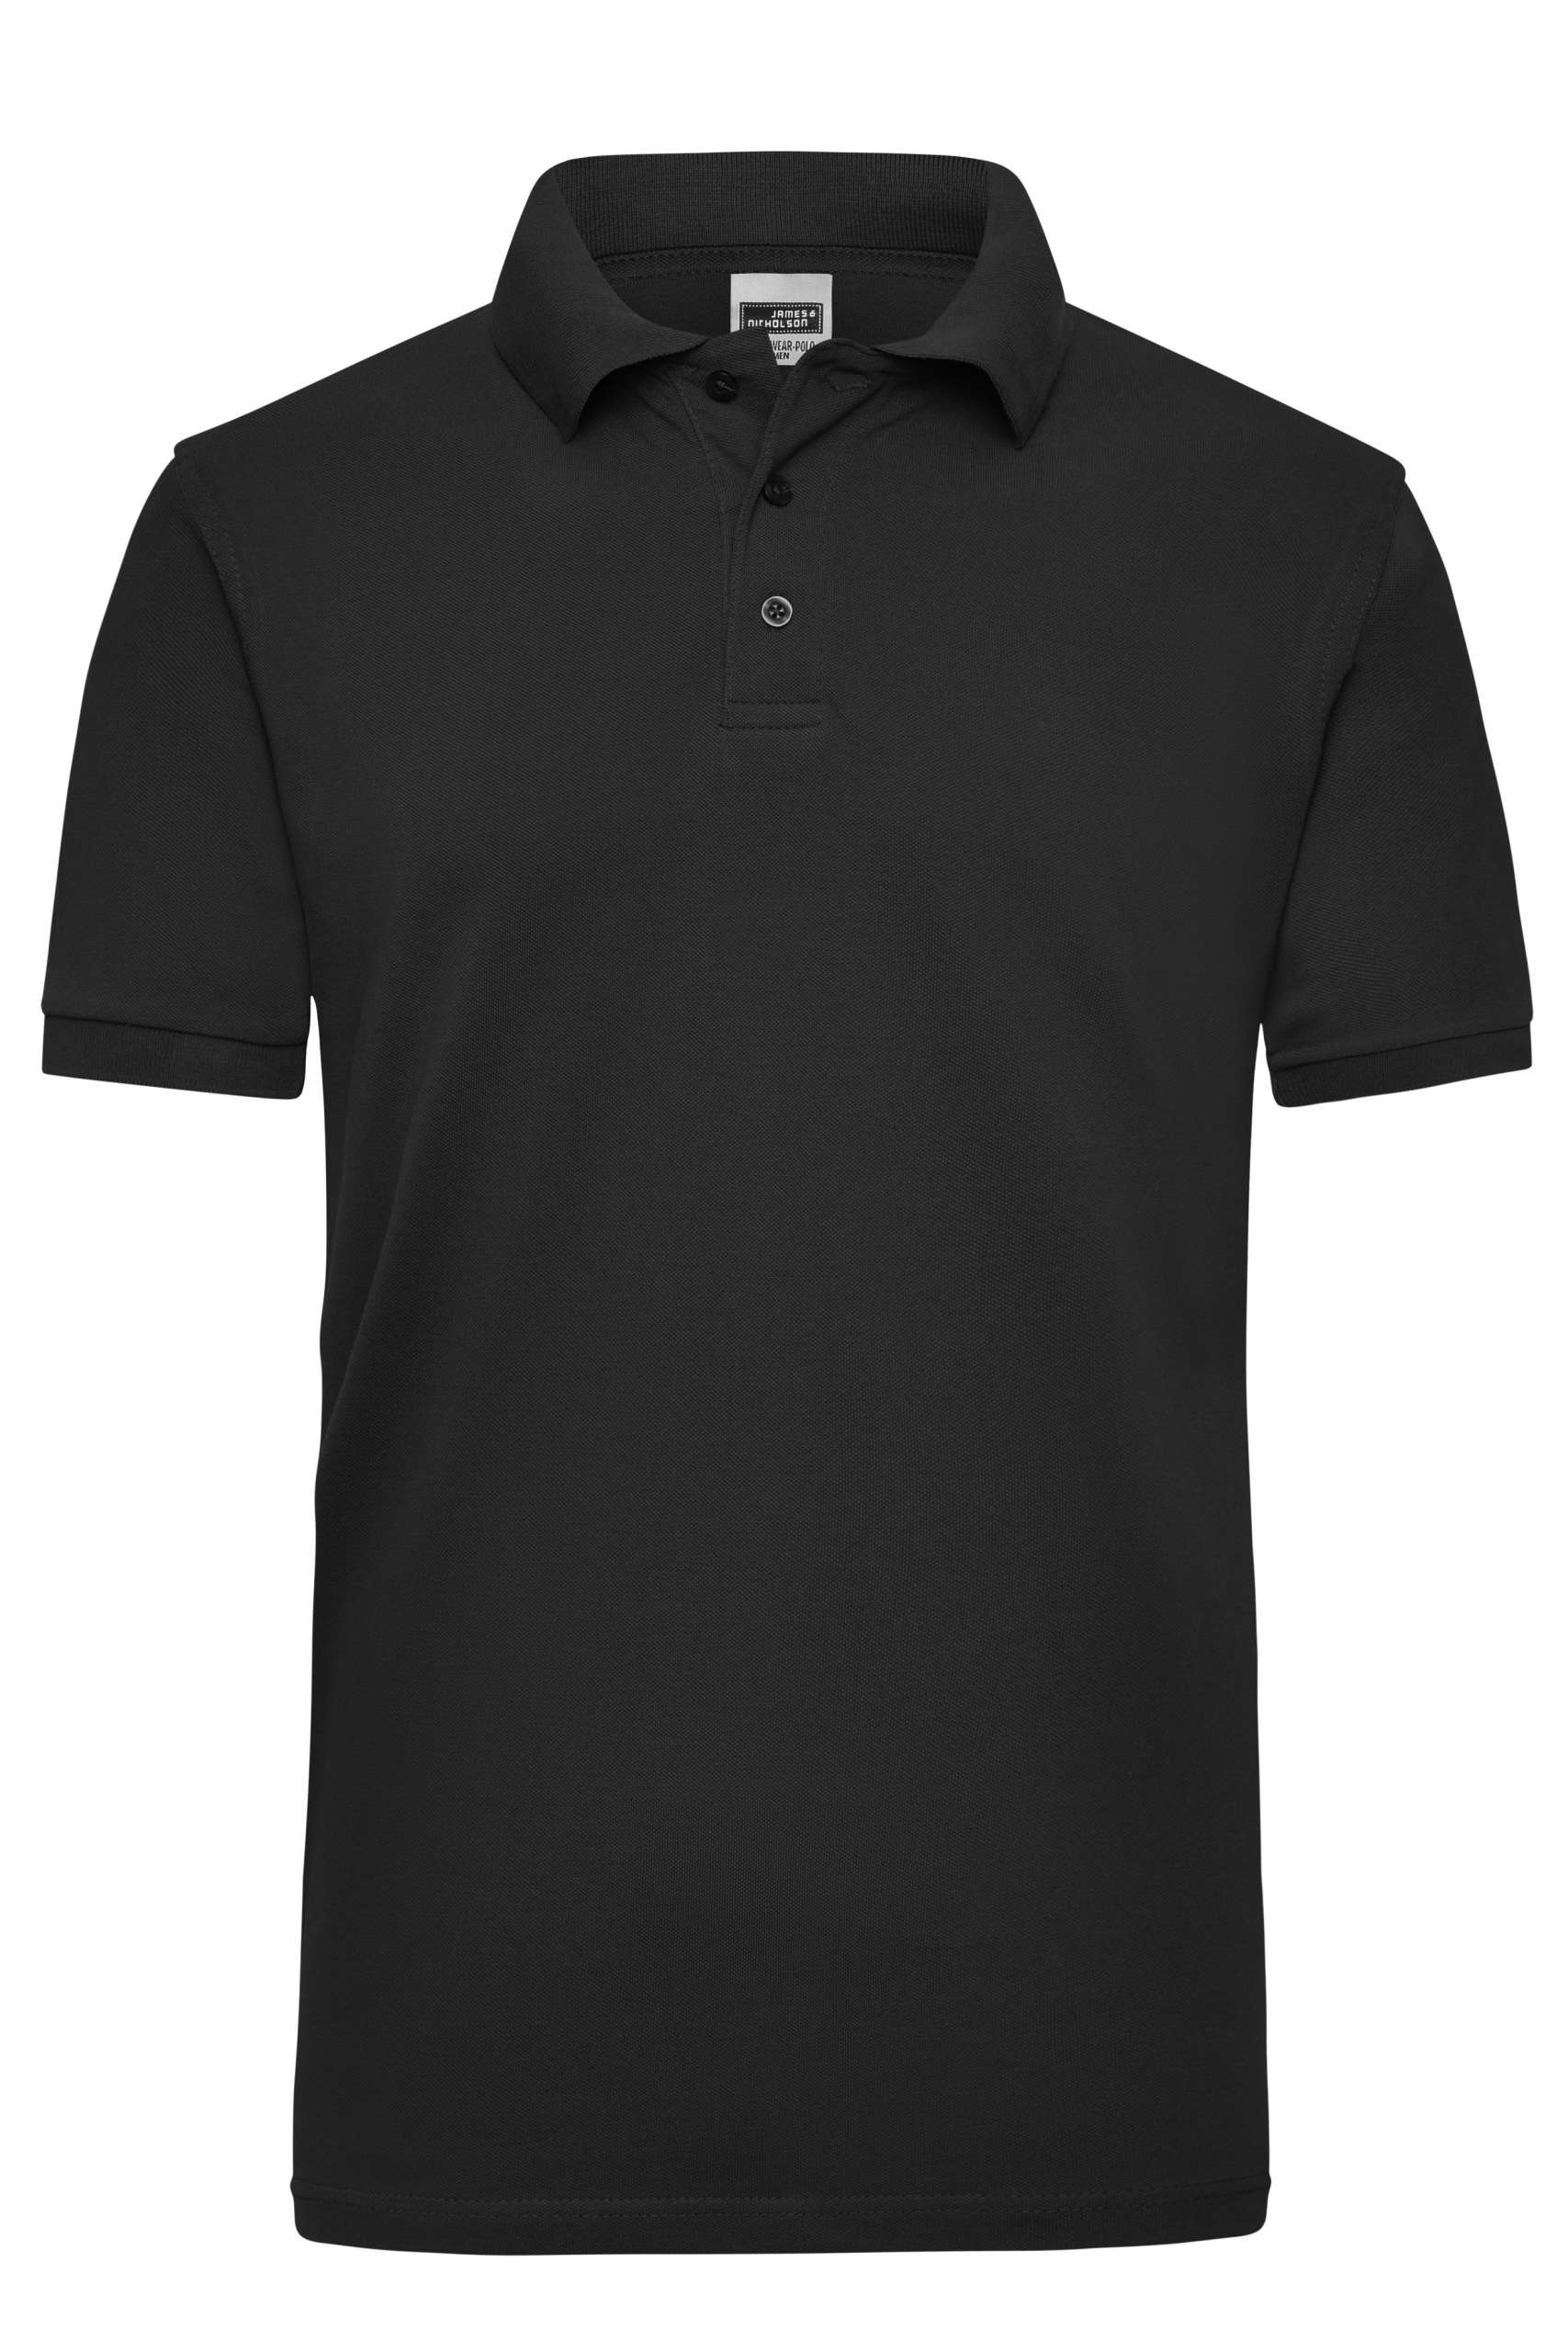 James & Nicholson Herren Kurzarm Polo T-Shirt verschiedene Farben und Gr S-XXL